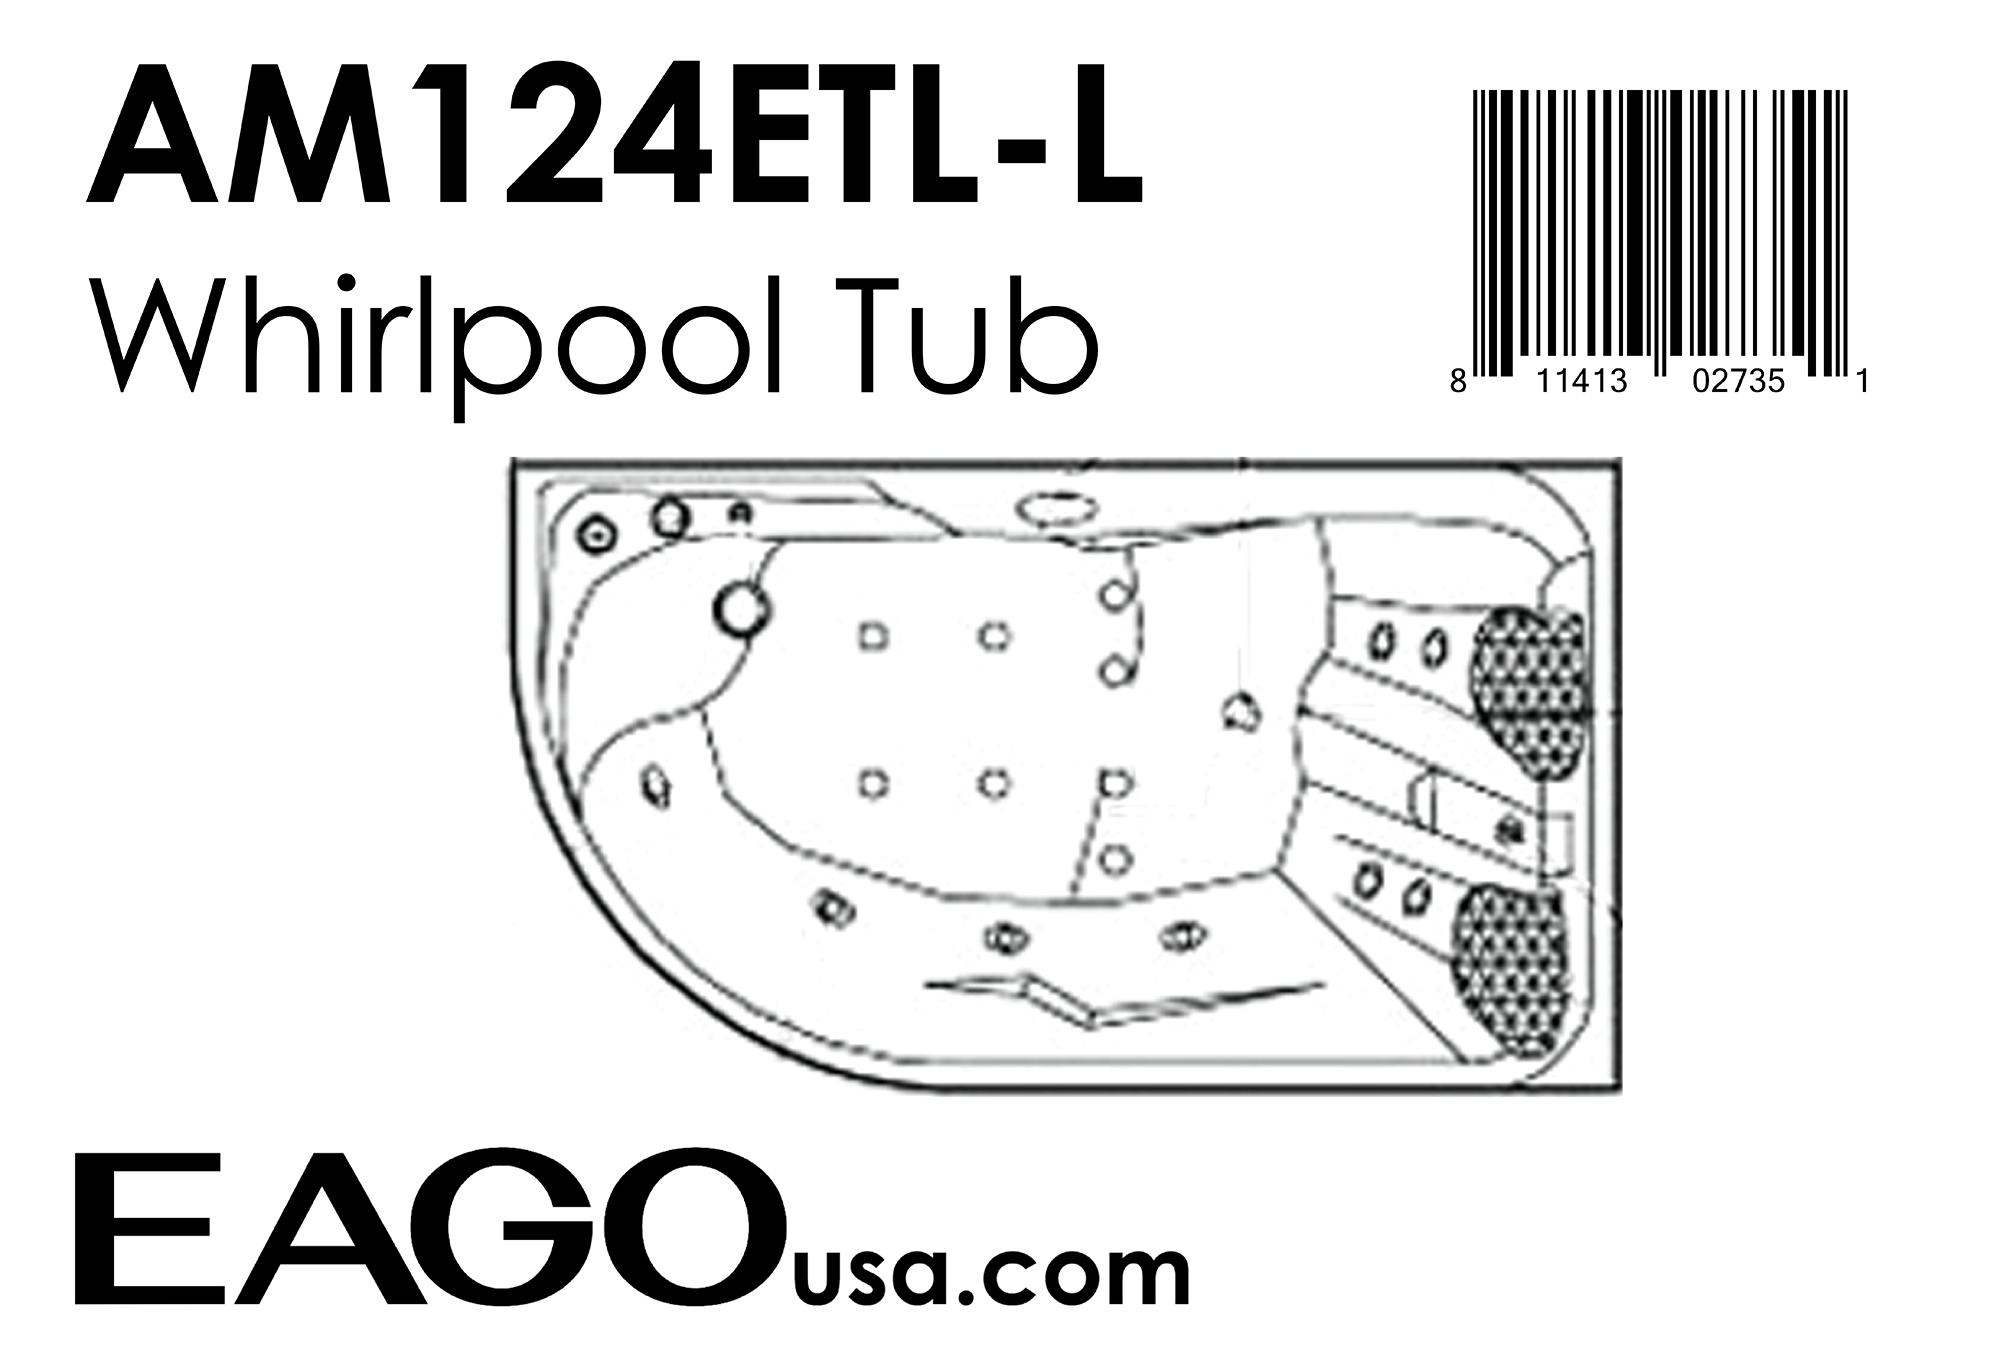 EAGO - 6 ft Left Corner Acrylic White Whirlpool Bathtub for Two | AM124ETL-L